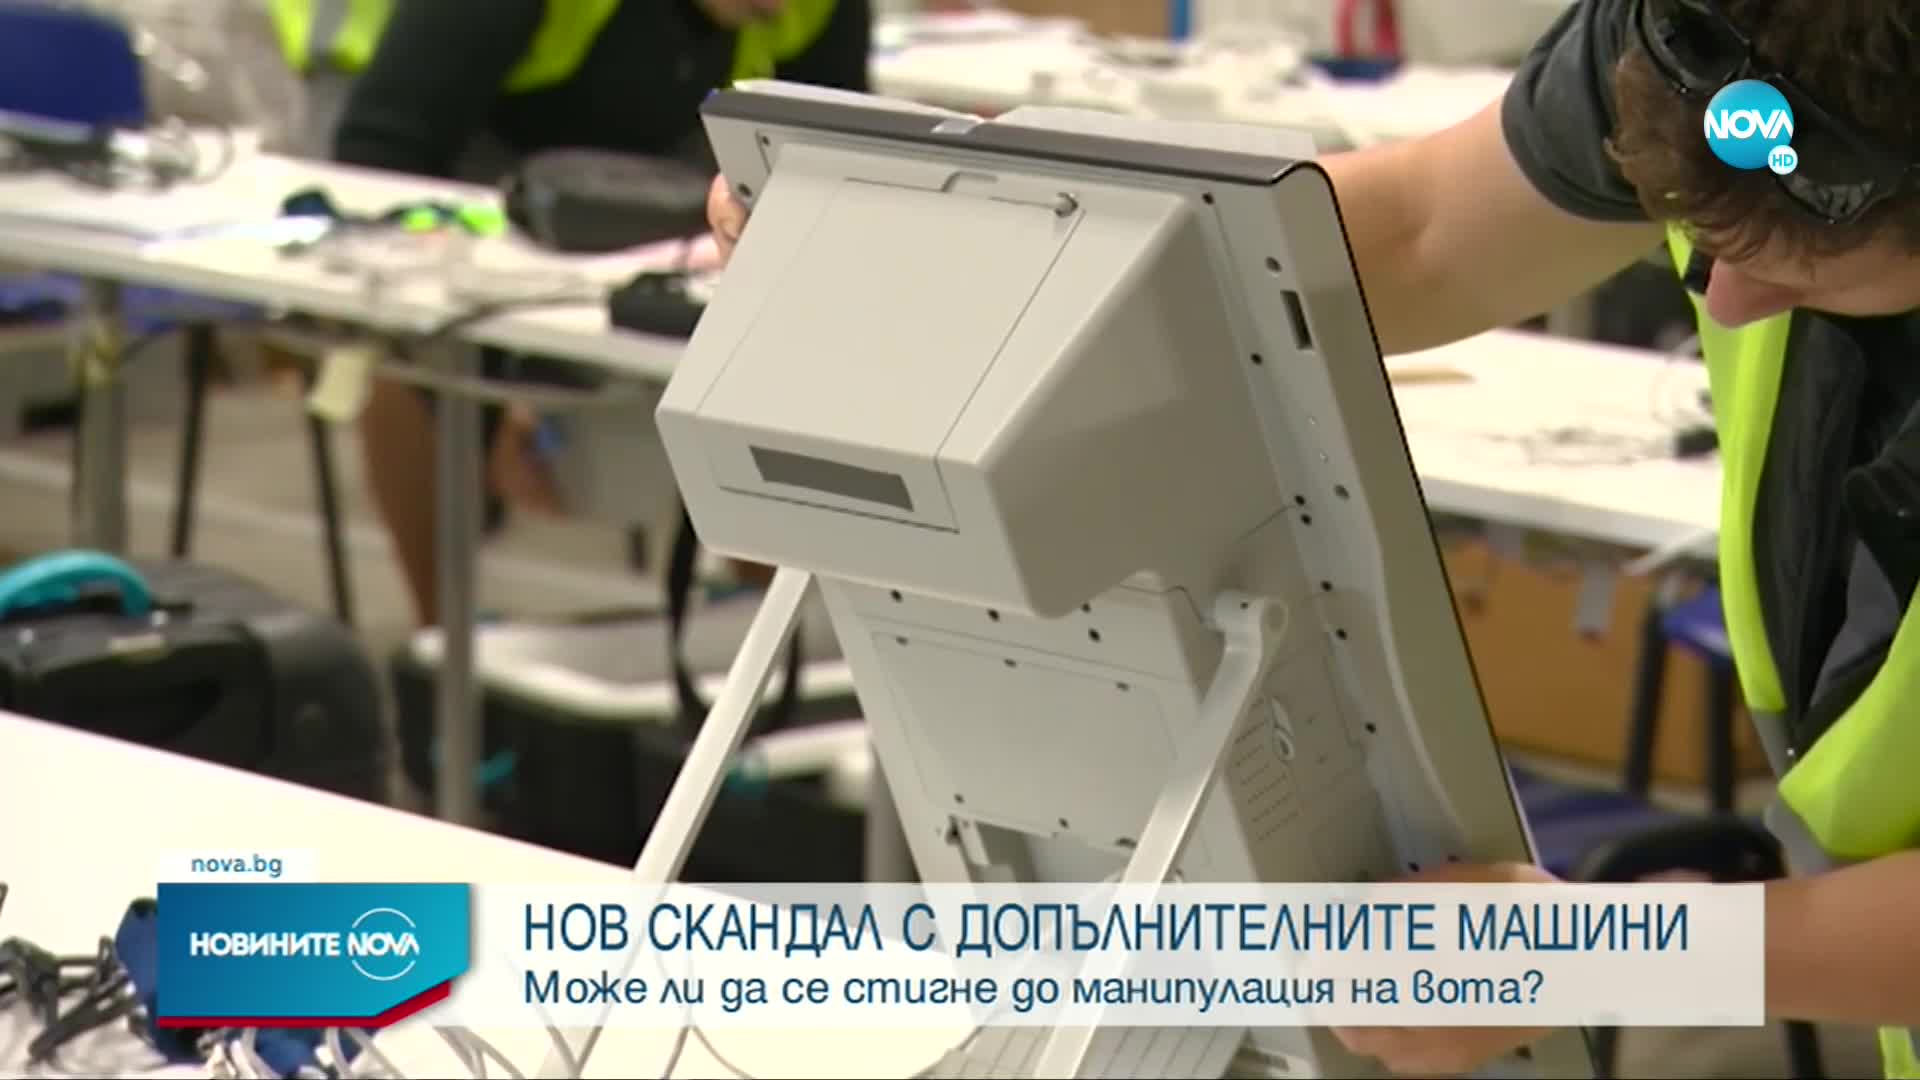 Пореден ден разногласия около допълнителните машини за гласуване (ОБЗОР)